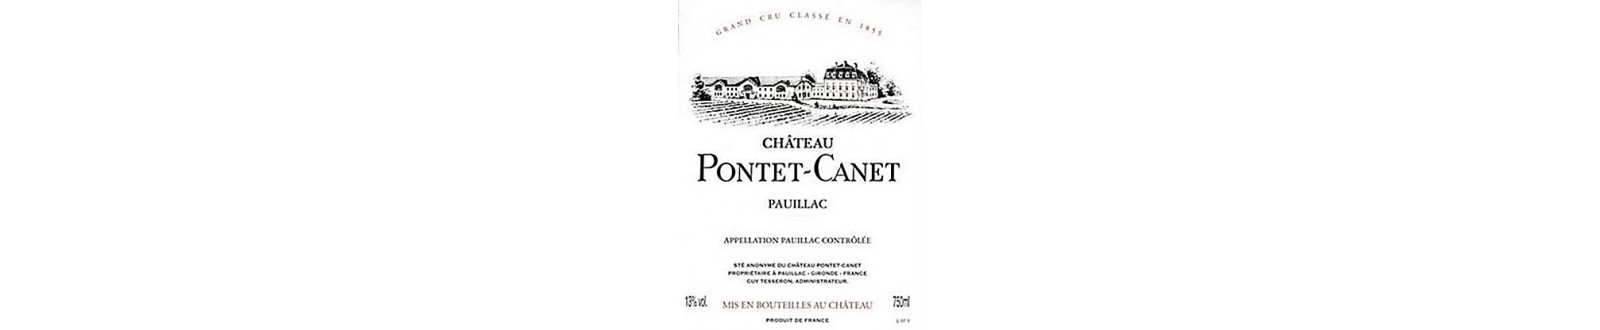 Vin(s) du Château Bolaire